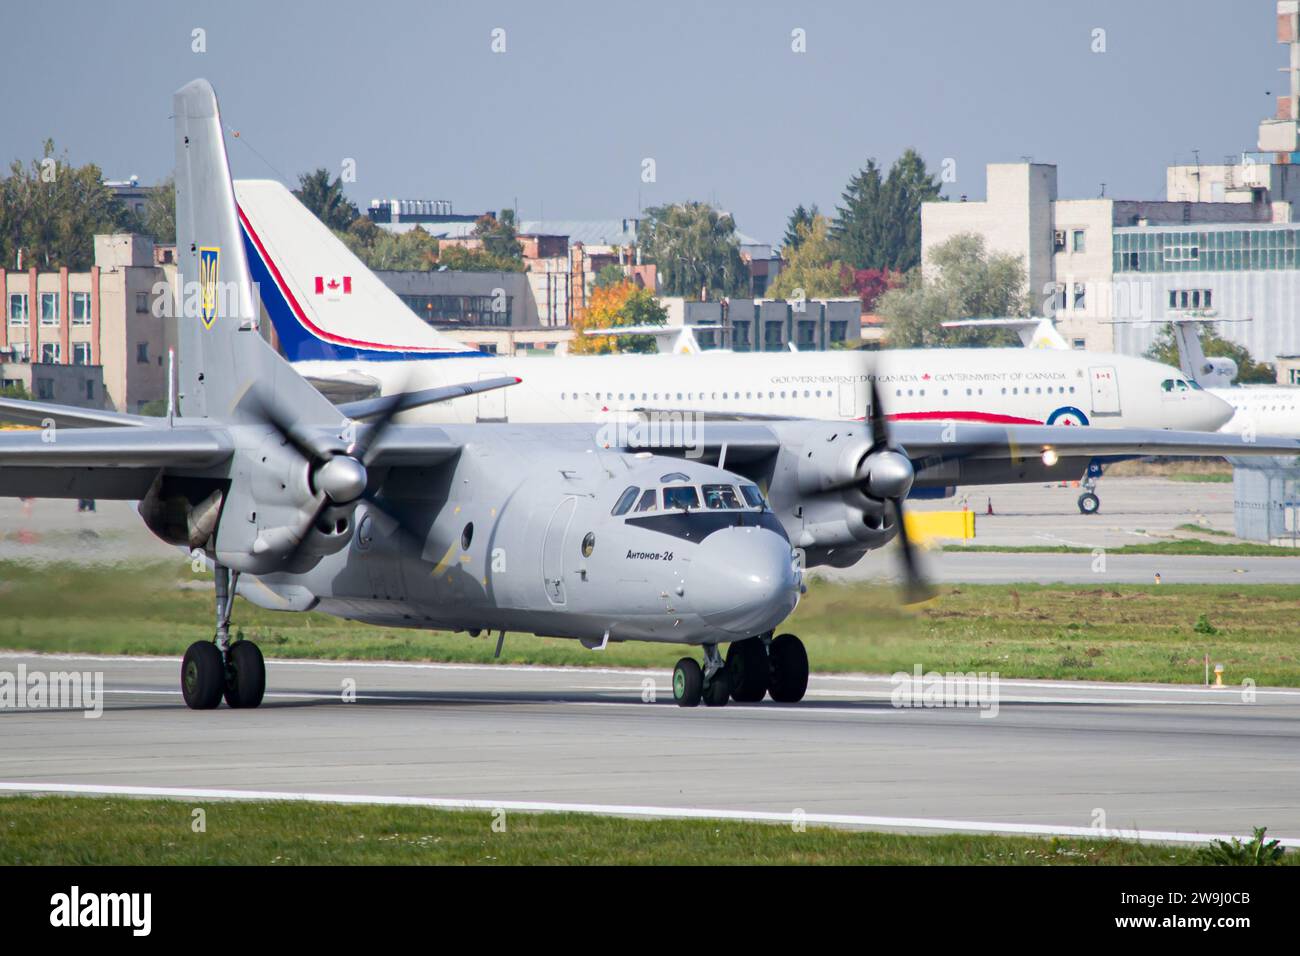 Le forze armate ucraine Antonov An-26 rallentano dopo l'atterraggio a Leopoli con la Royal Canadian Air Force Airbus CC-150 Polaris sullo sfondo Foto Stock